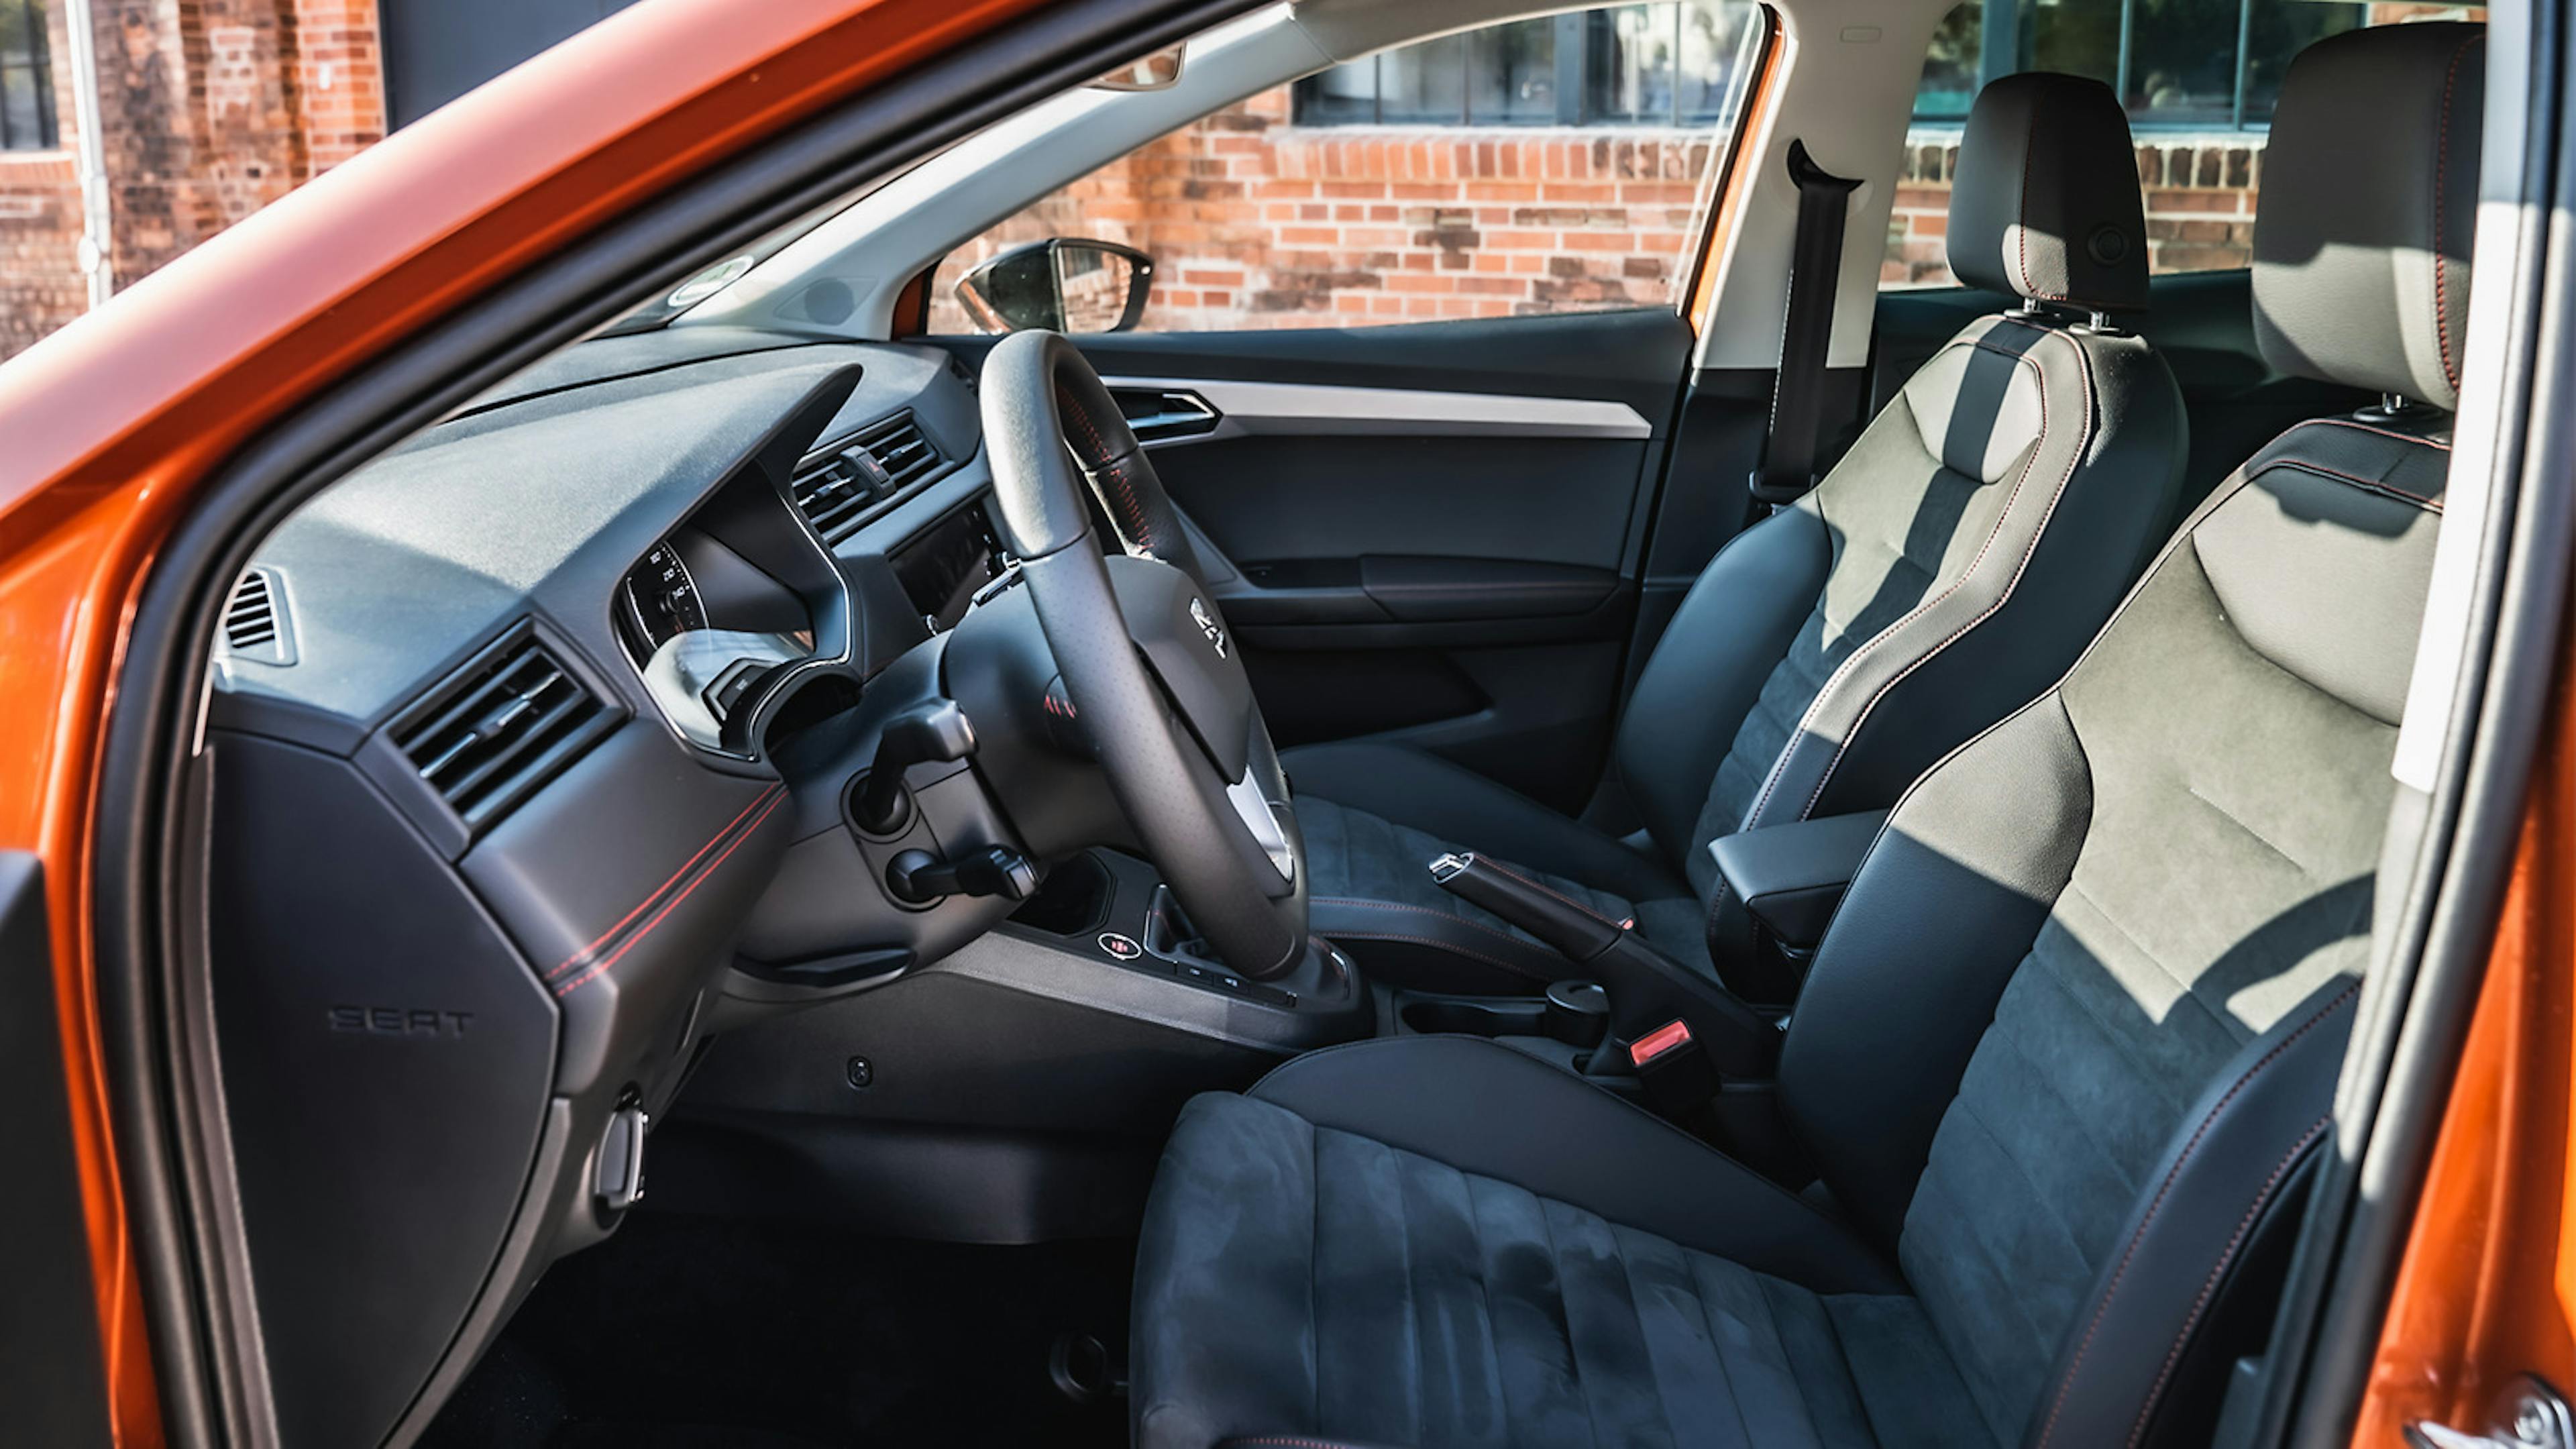 Sportlich: Der Innenraum des Seat Ibiza mit FR-Ausstattung